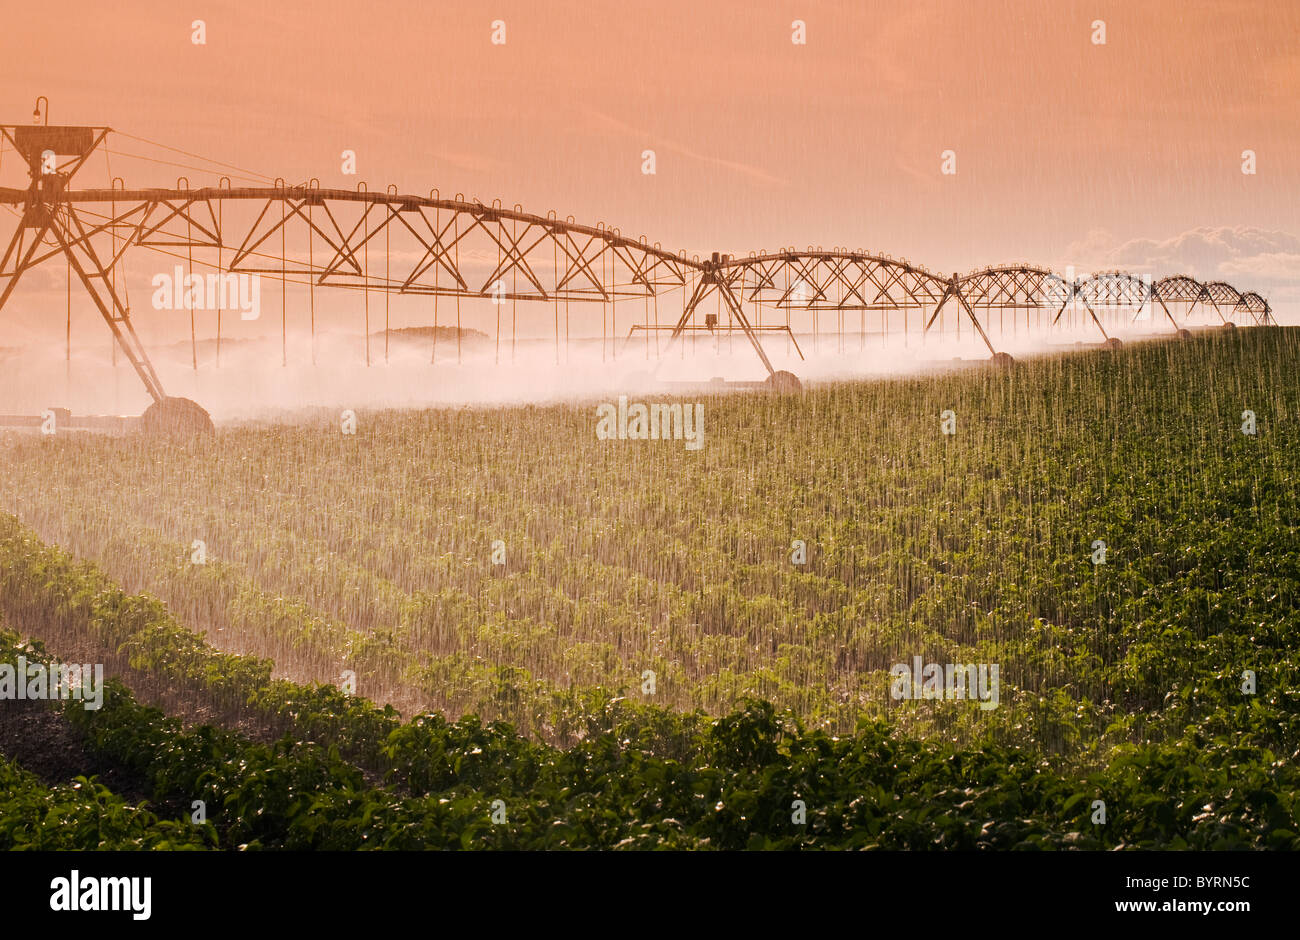 Landwirtschaft - eine Zentrum-Pivot-Bewässerungssystem bewässert ein Feld Mitte Wachstum Kartoffeln / Tiger Hügel, Manitoba, Kanada. Stockfoto